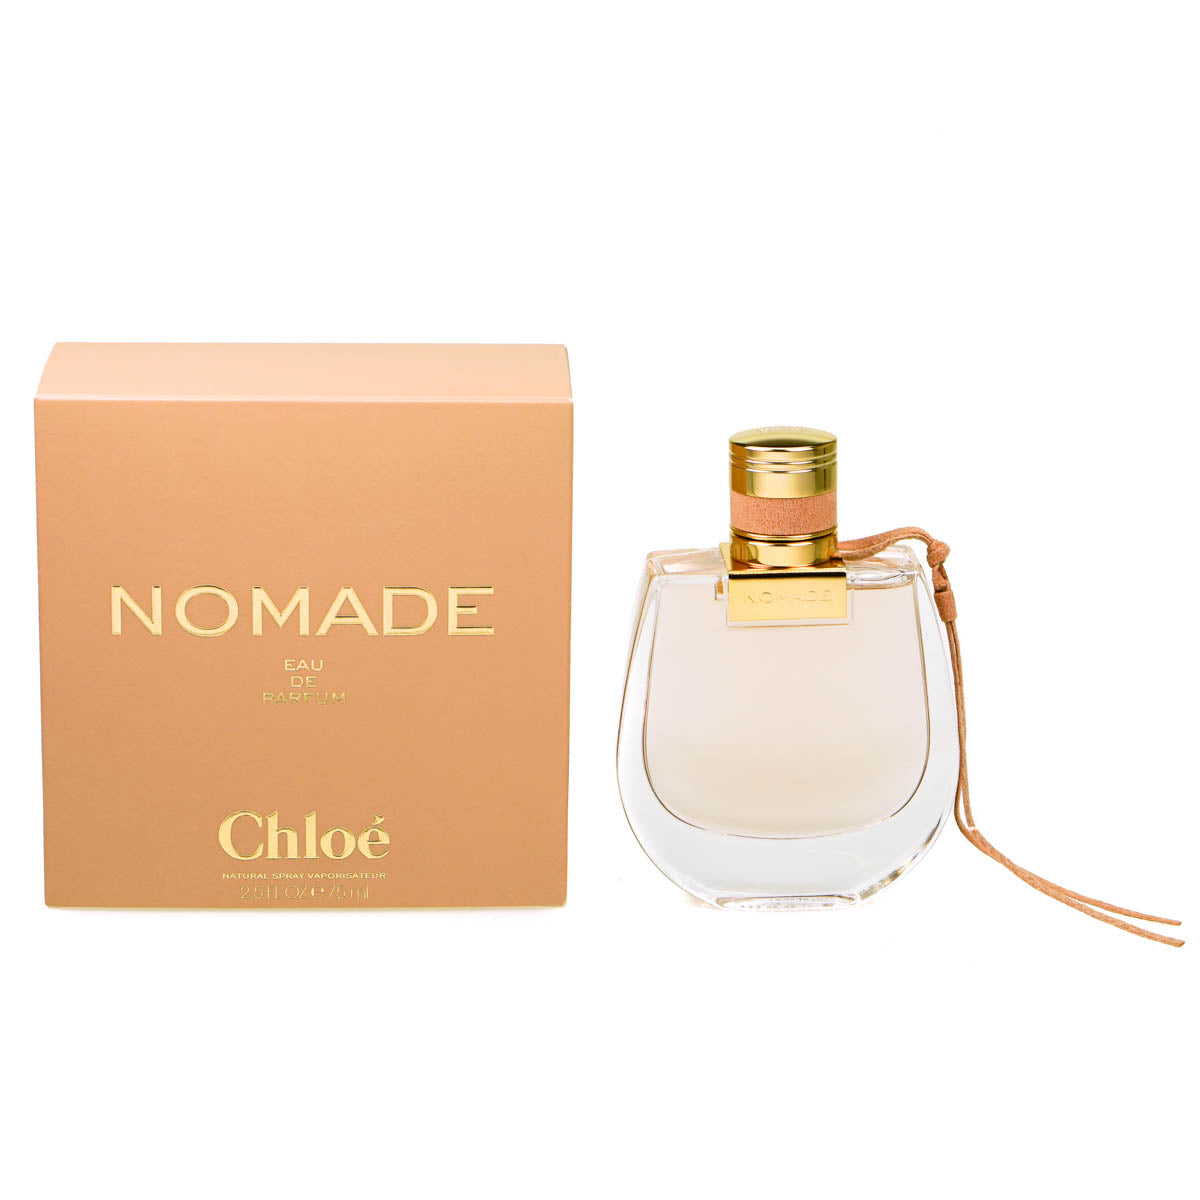 Chloe Nomade 75ml Eau De Parfum (Blemished Box)